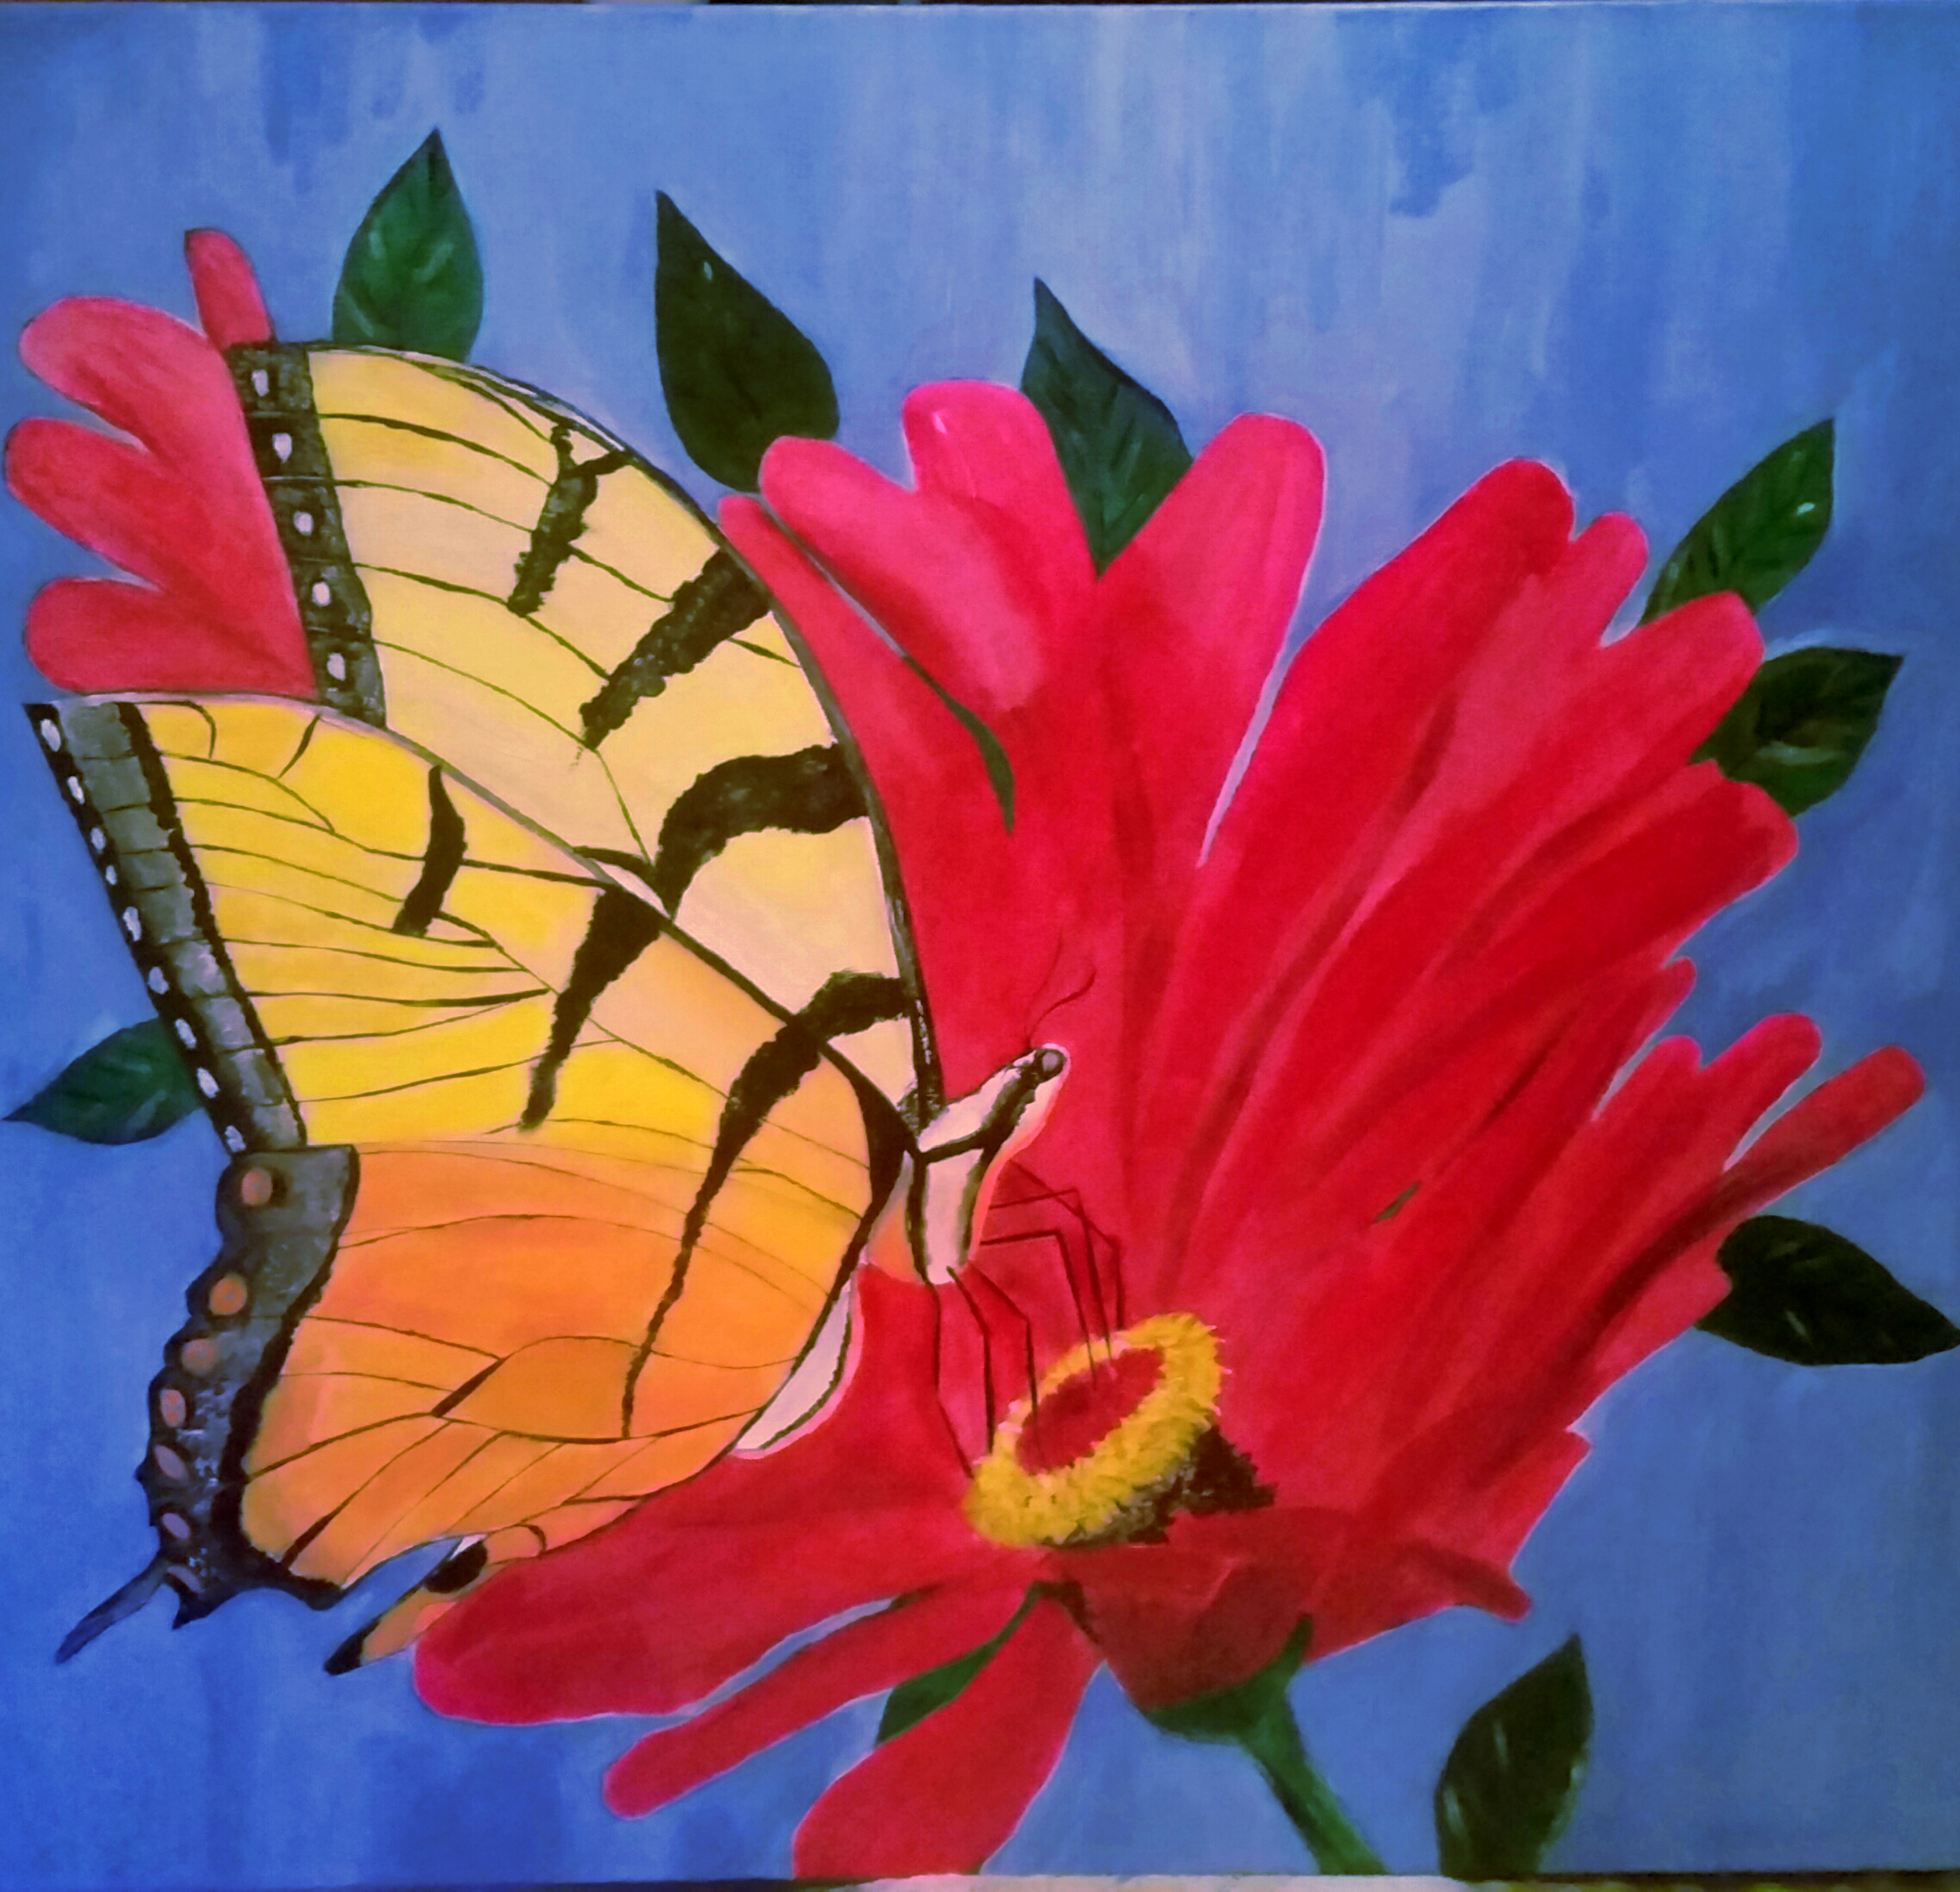 Butterfly on Flower 24 x 24  $250